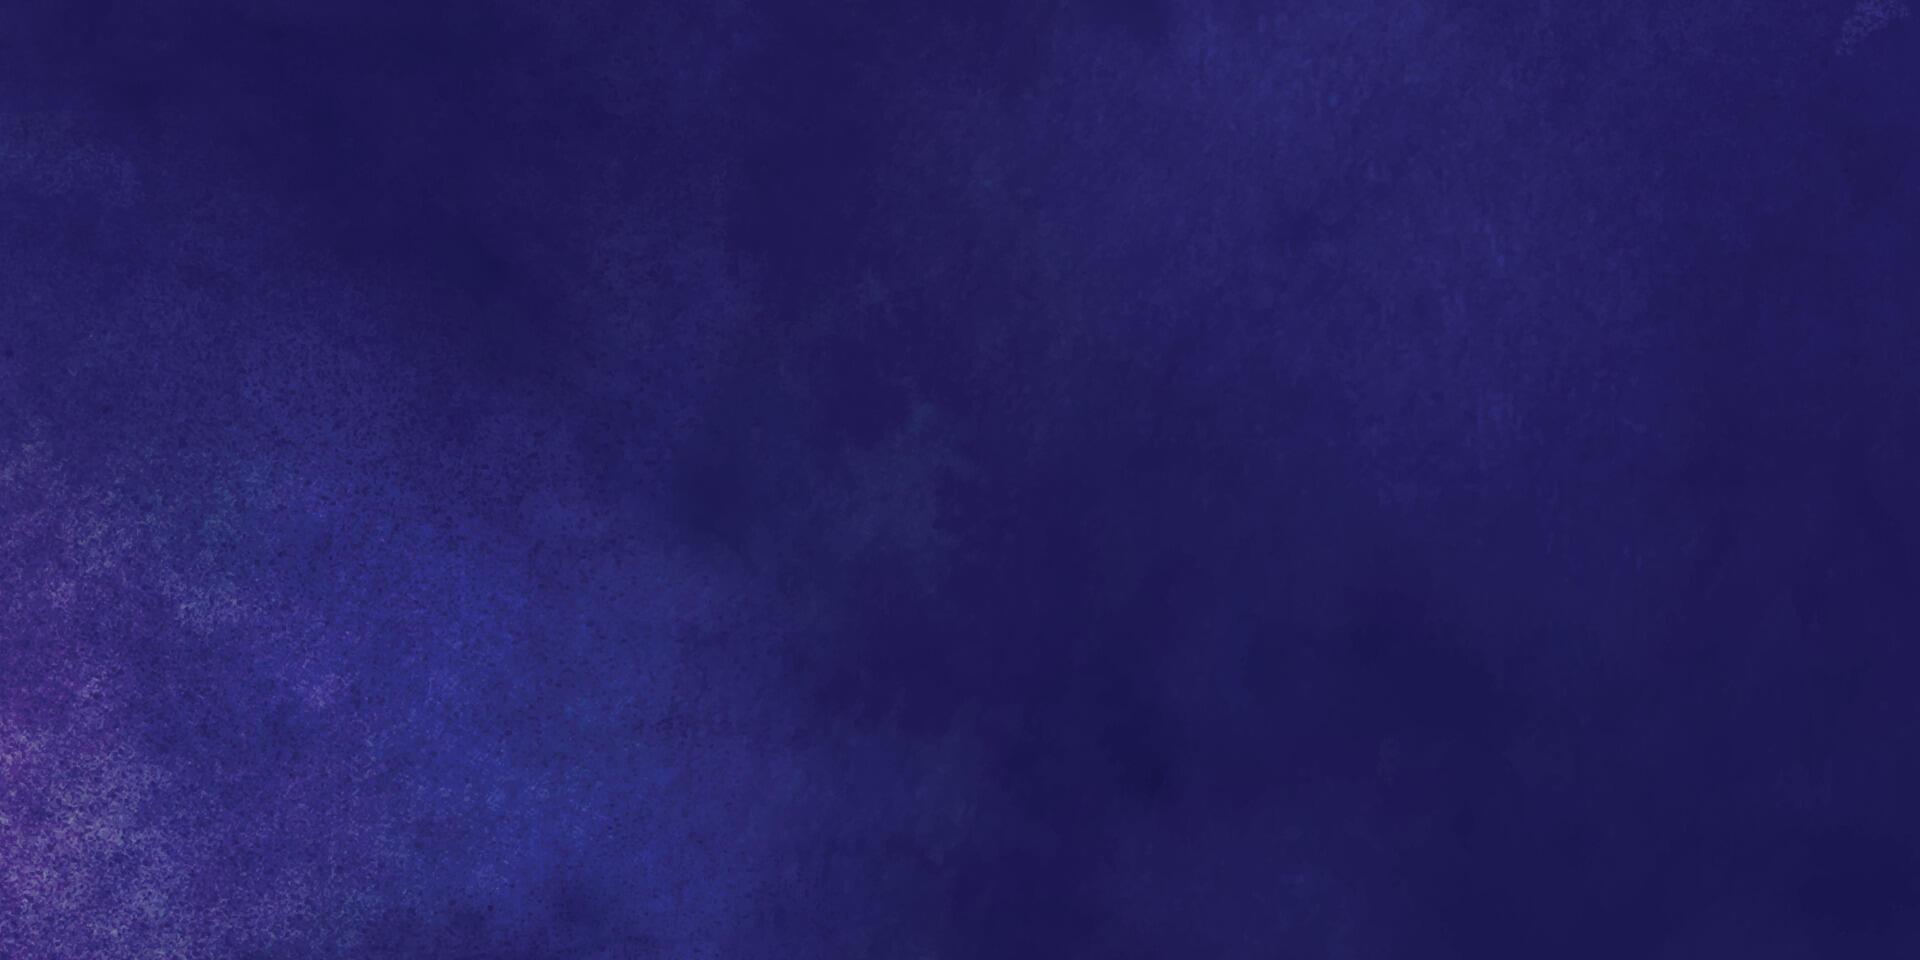 dunkel Marine Blau Aquarell Hintergrund. tief Blau Aquarell Textur. abstrakt Grunge Textur Hintergrund. Aquarell waschen aqua gemalt Textur schließen hoch, grungy Design. vektor